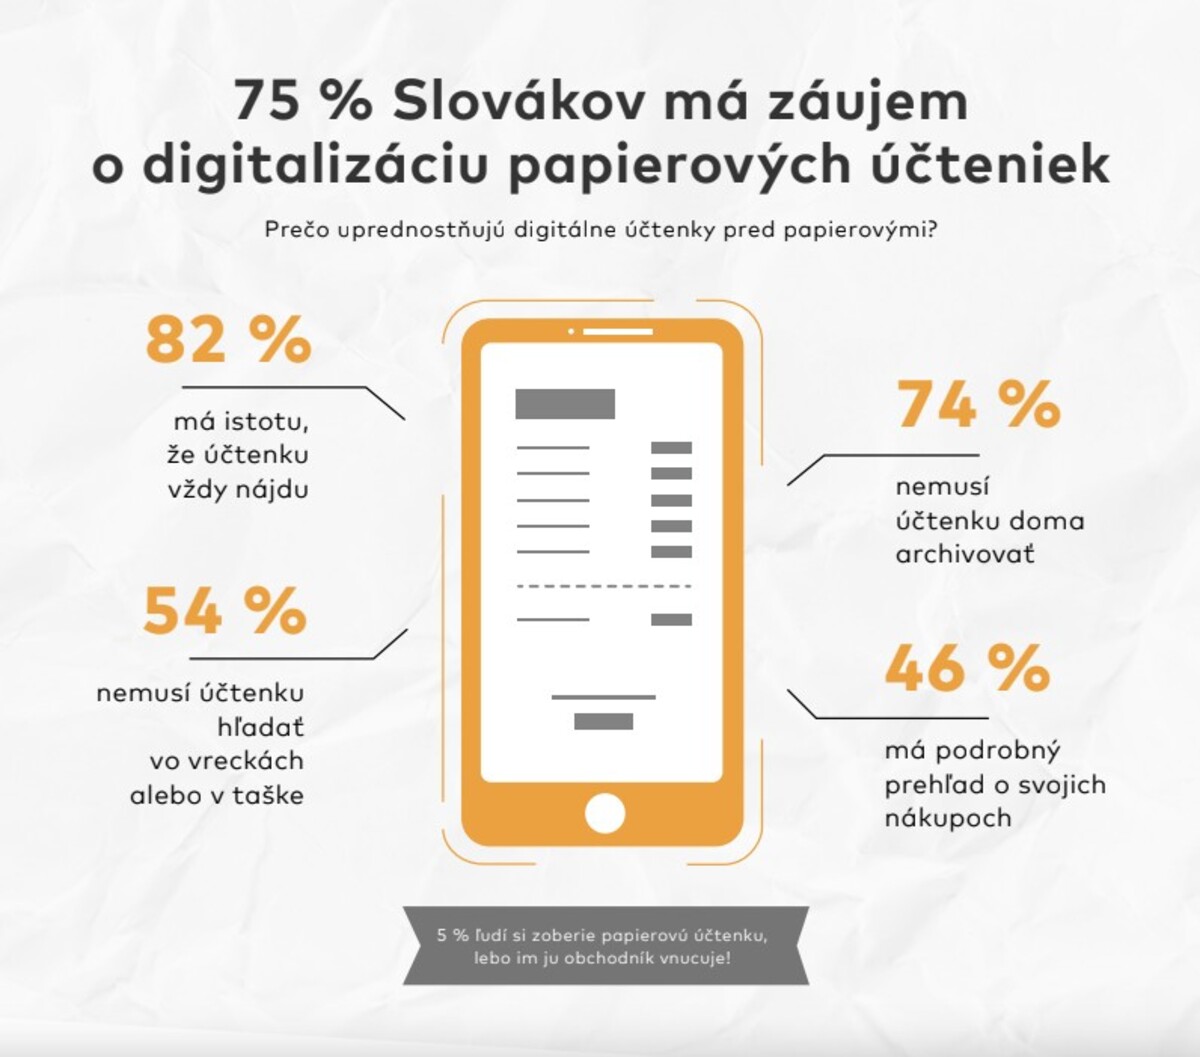 Prieskum ukázal, že Slováci chcú digitálne účtenky. 